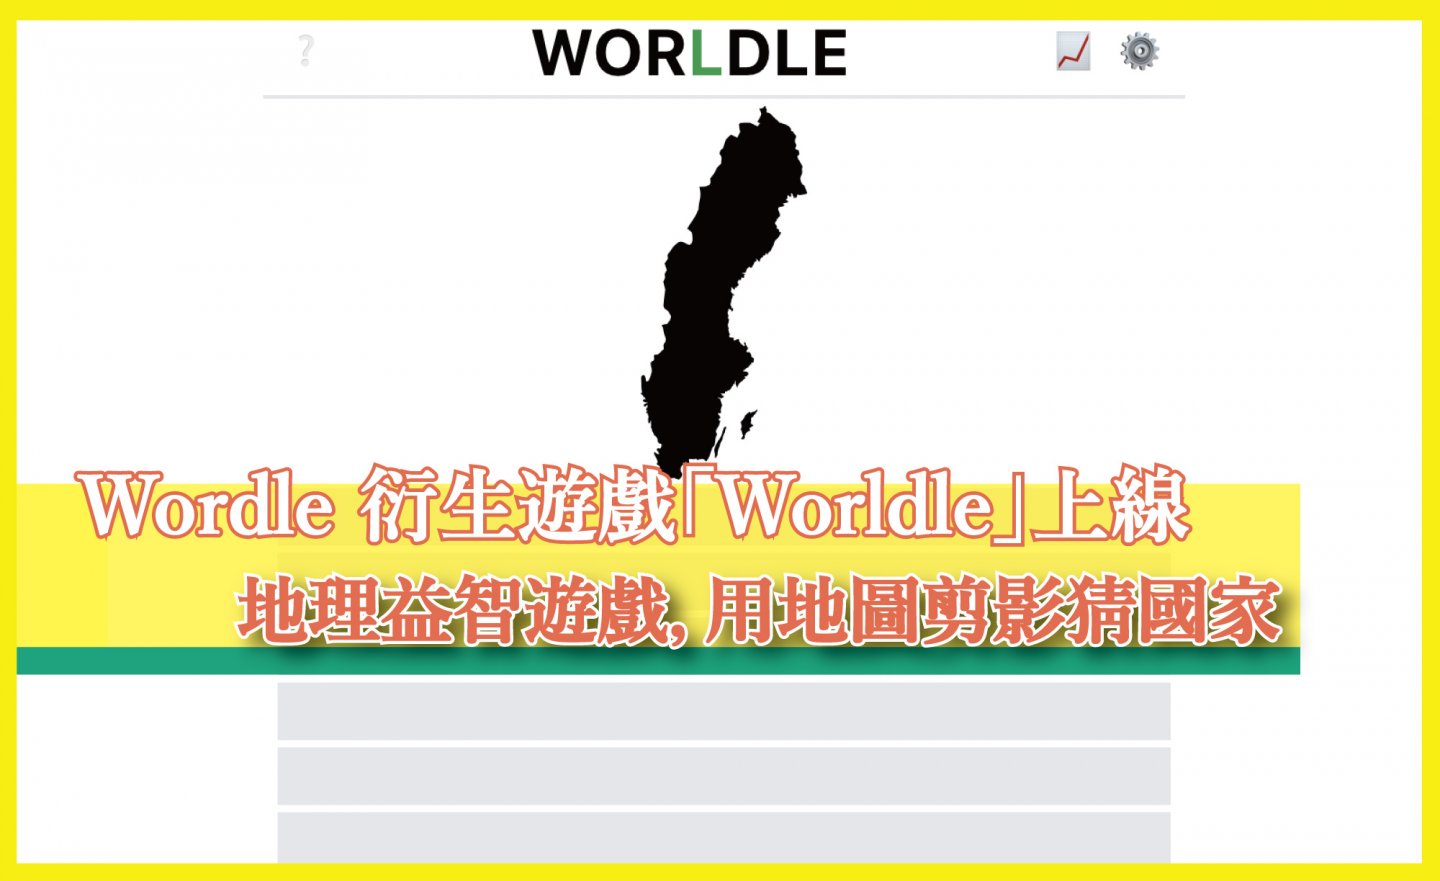 【免費】Wordle 衍伸益智遊戲「WORLDLE」，用地圖剪影猜國家名稱